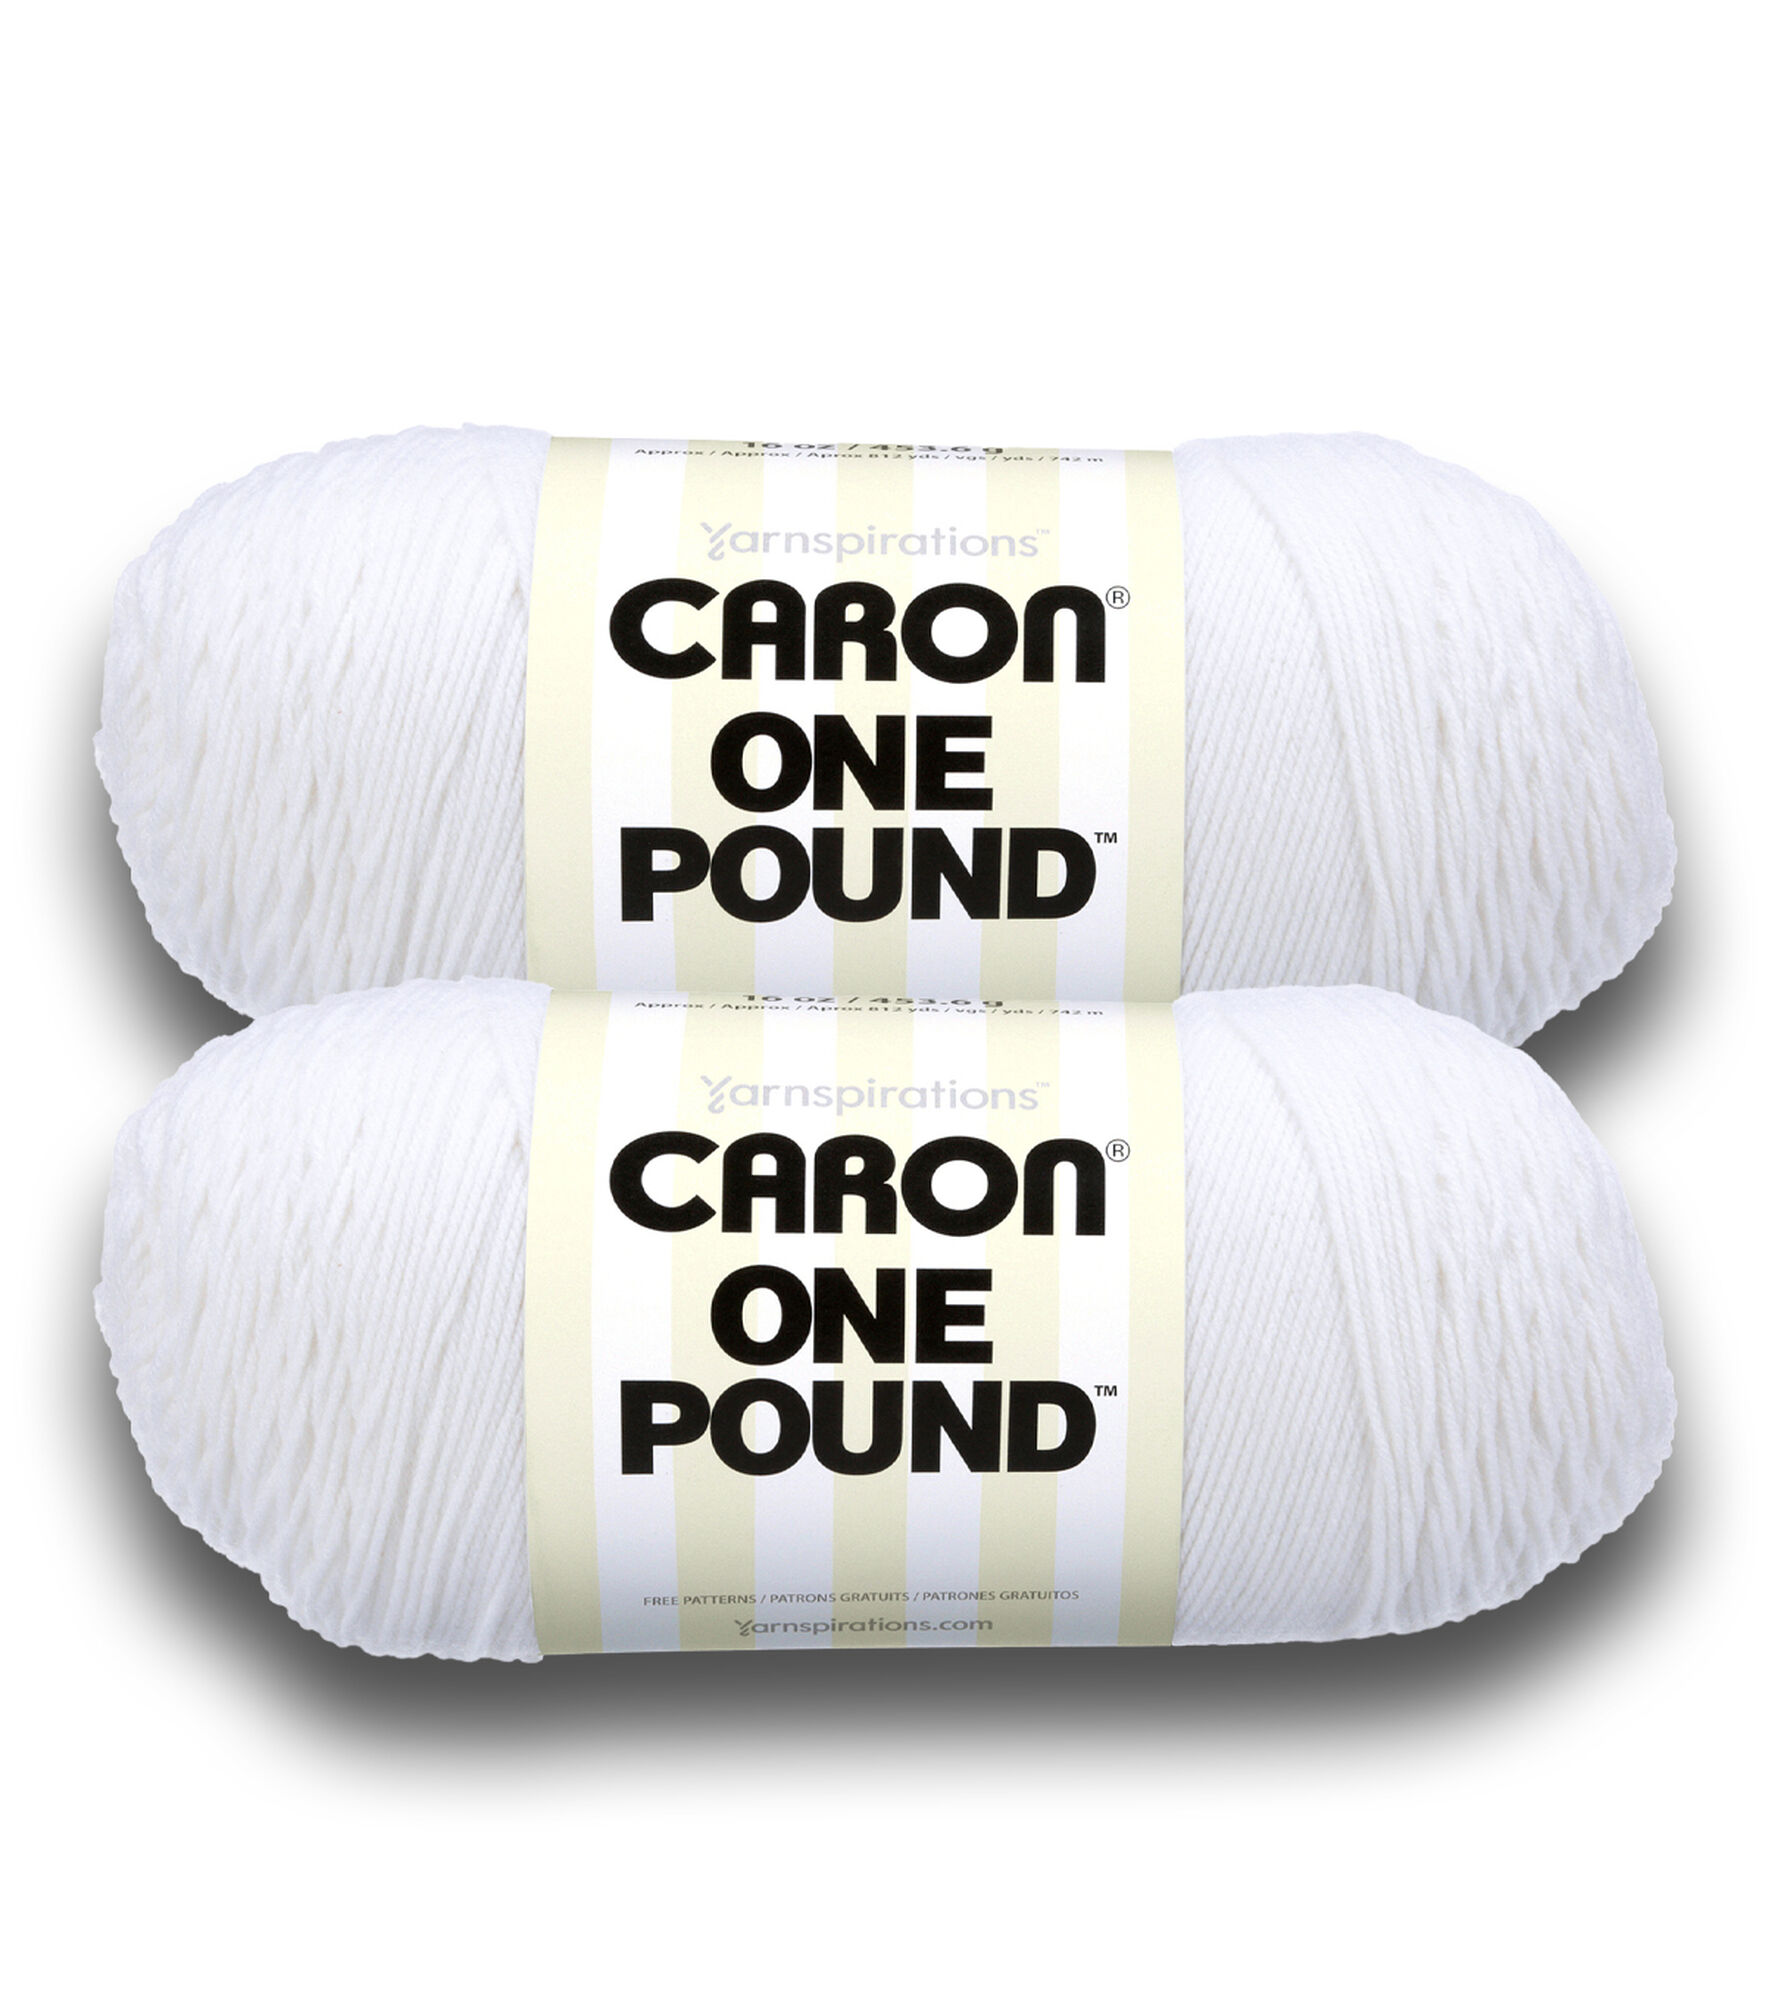 Caron 6oz Medium Weight Acrylic Simply Soft Freckles Stripe Yarn, JOANN